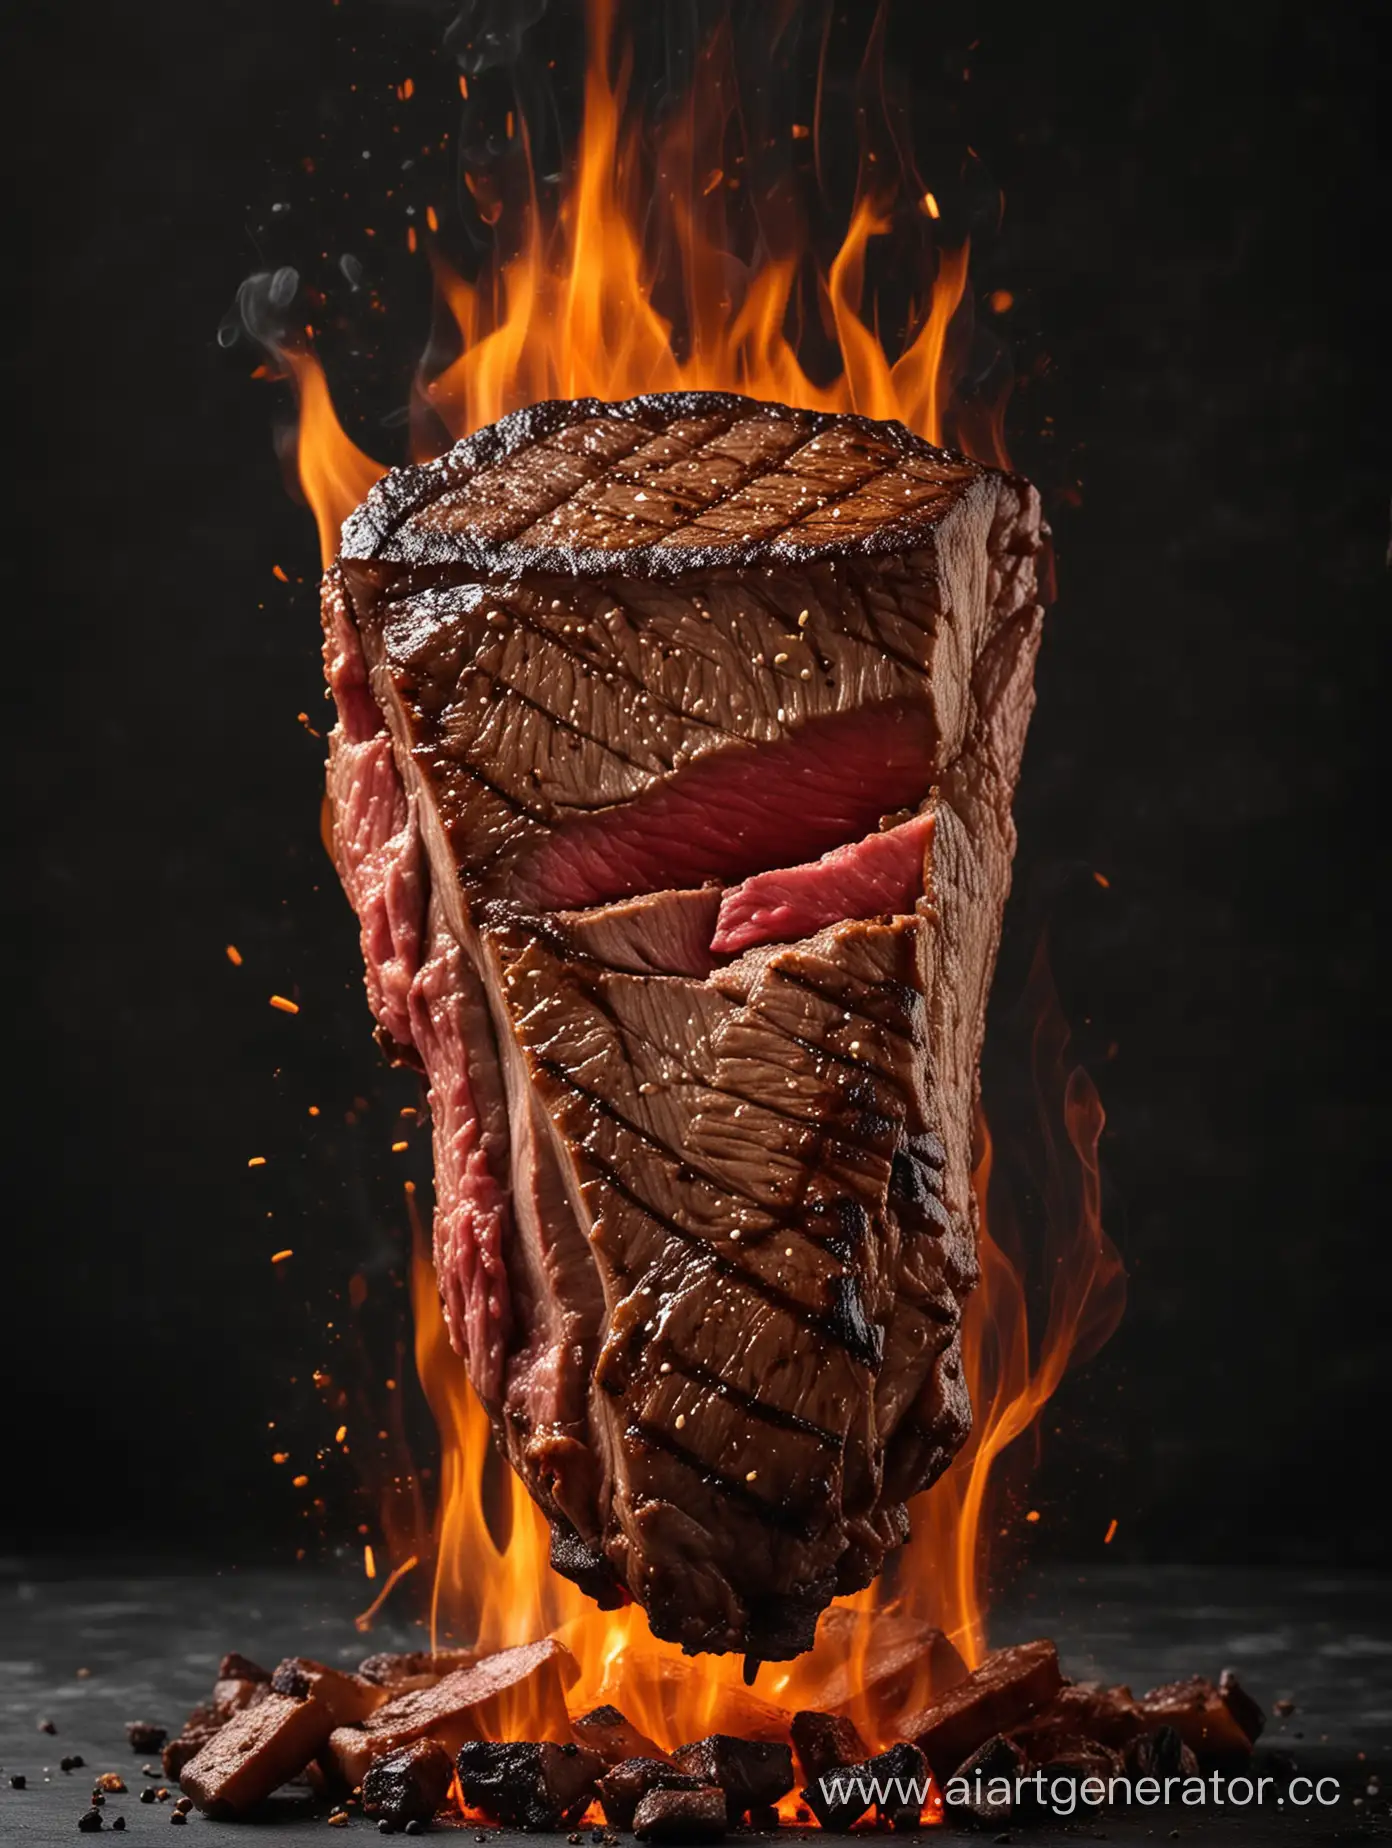 Flaming-Steak-on-Dark-Background